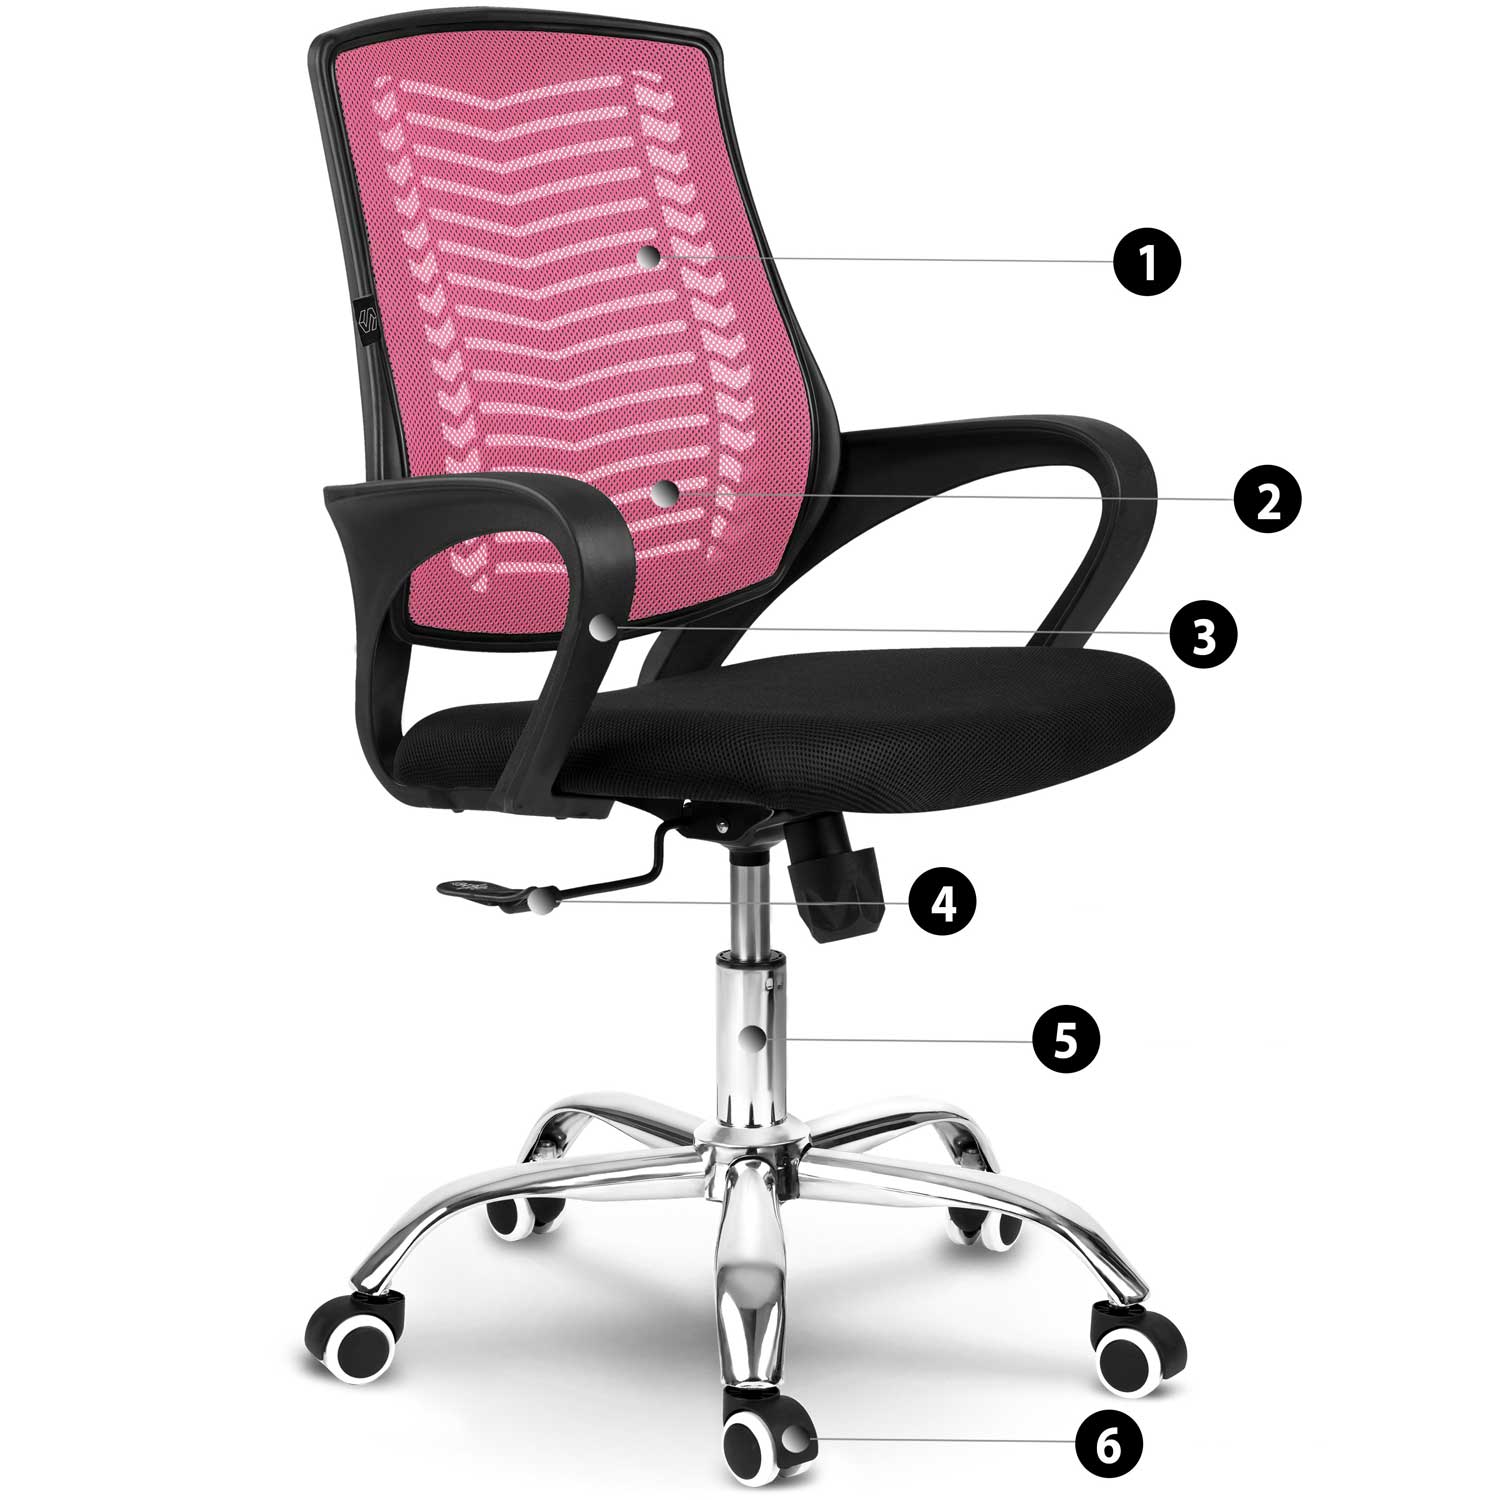 Fotel biurowy obrotowy krzesło oddychające oparcie z mikrosiatki różne kolory